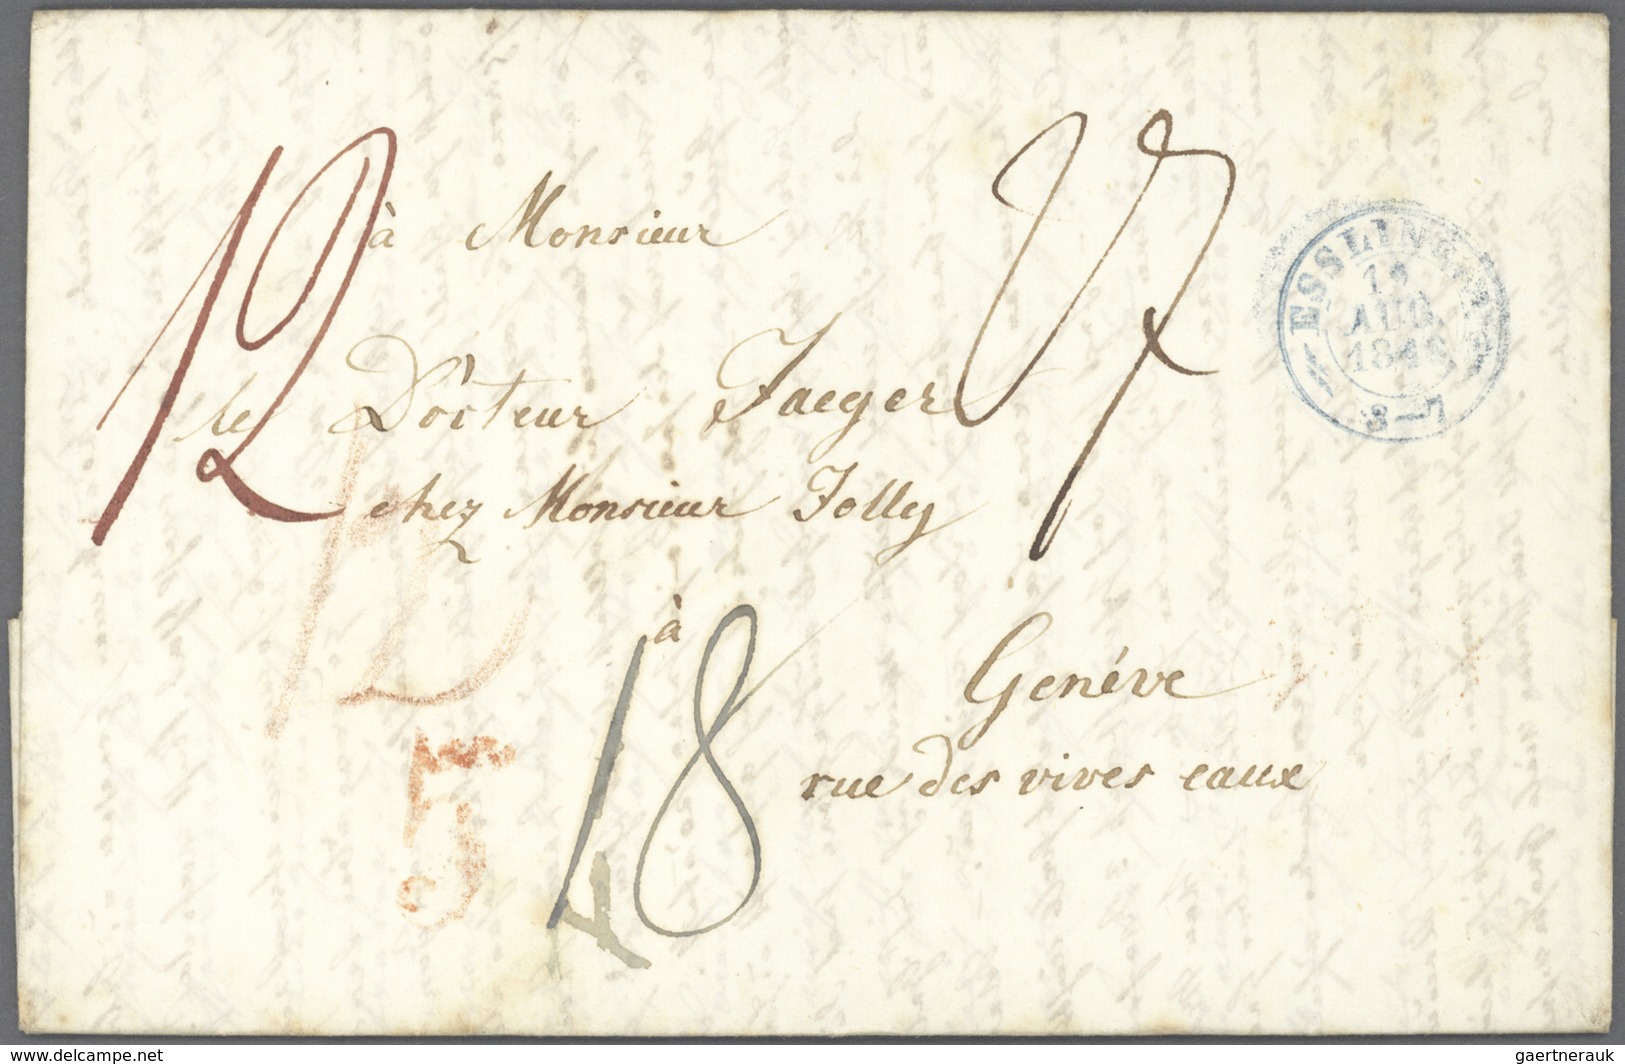 Nachlässe: Uriger Belegeposten mit hunderten Briefen und Ganzsachen ab 1762 bis in die Moderne, daru